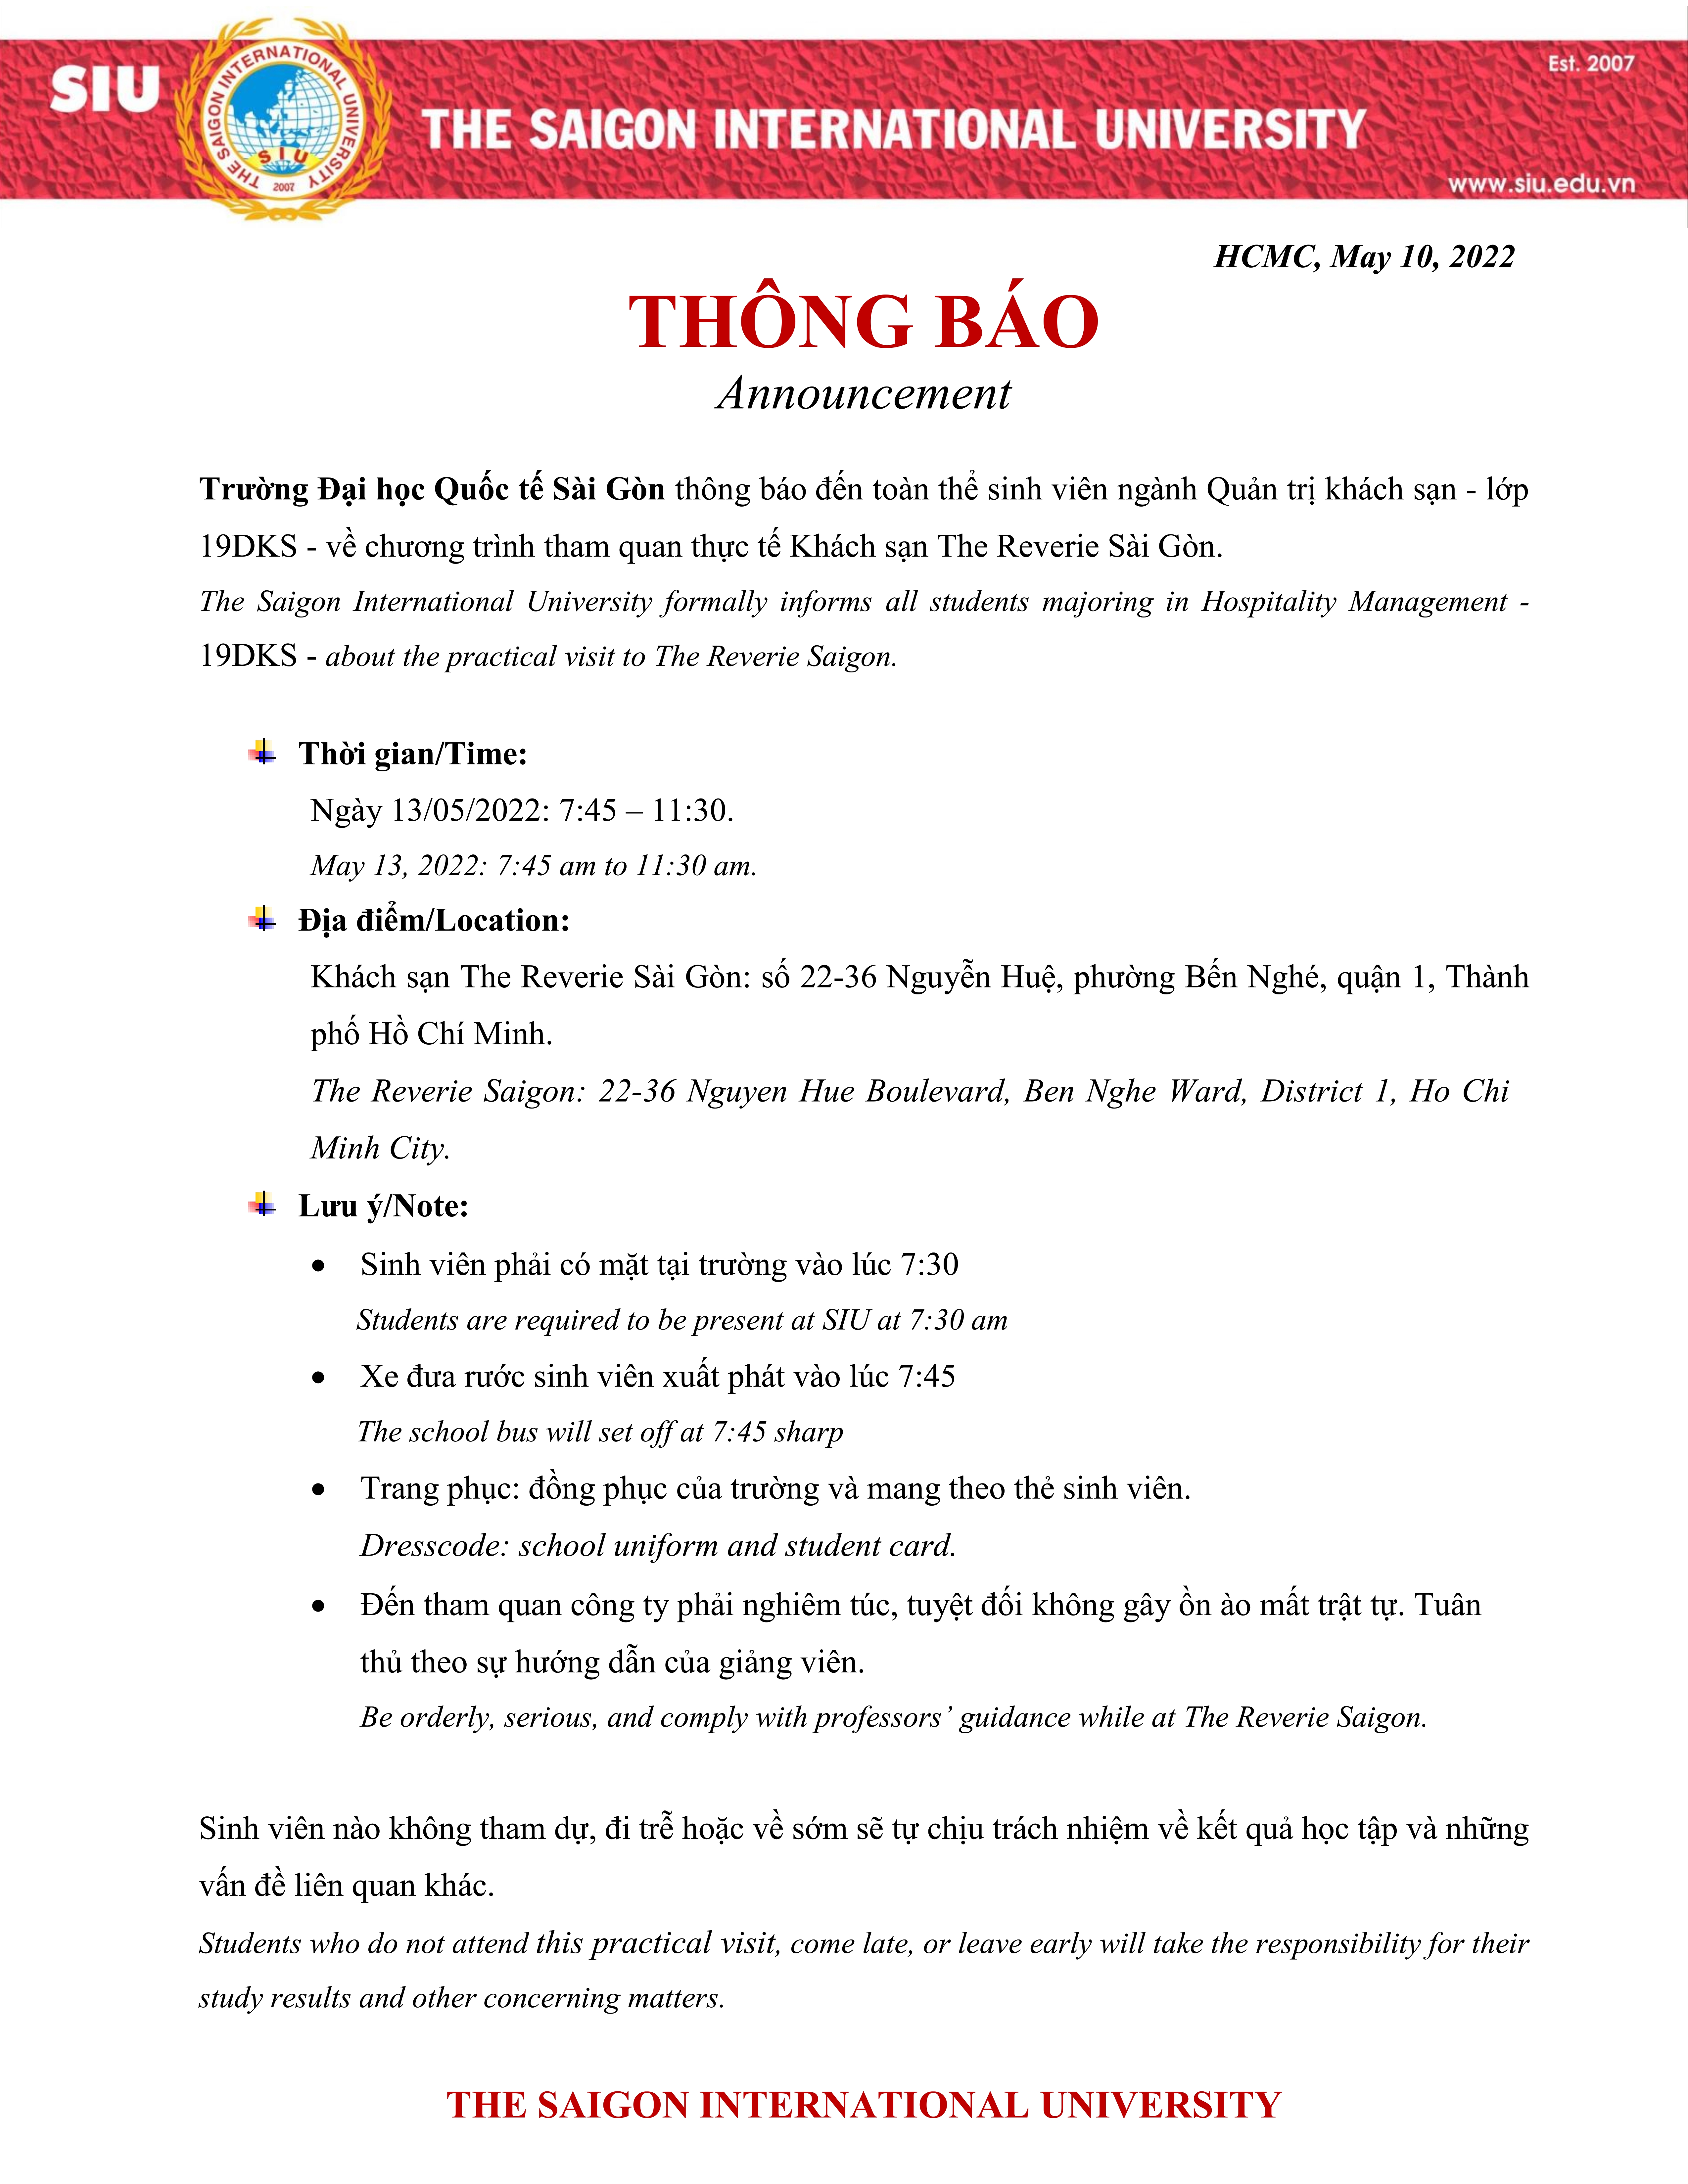 Tham quan thực tế Khách sạn The Reverie Sài Gòn 13-5-2022